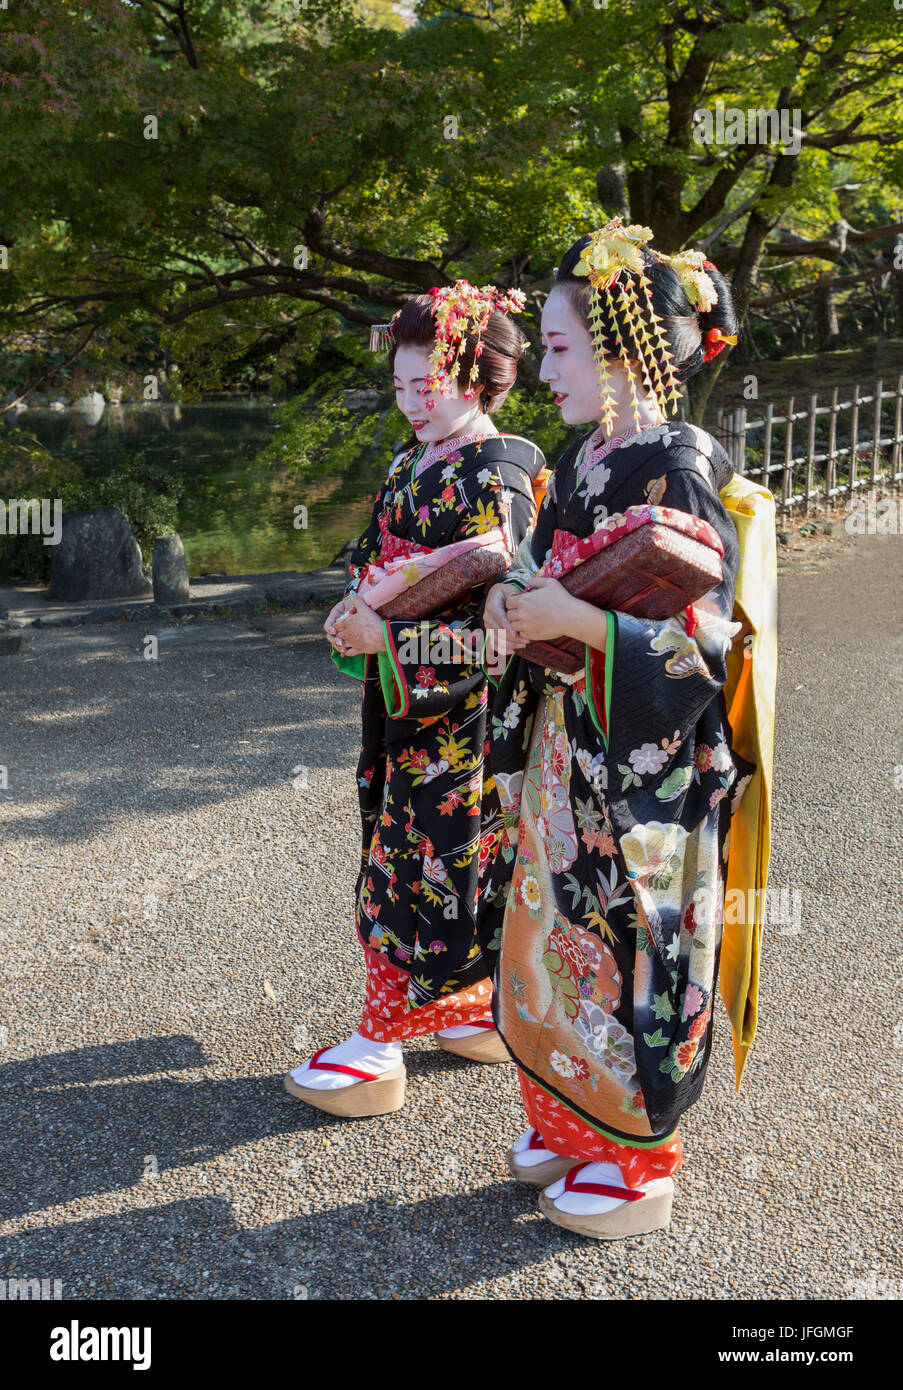 Japan, Kyoto City, Japanese geishas Stock Photo